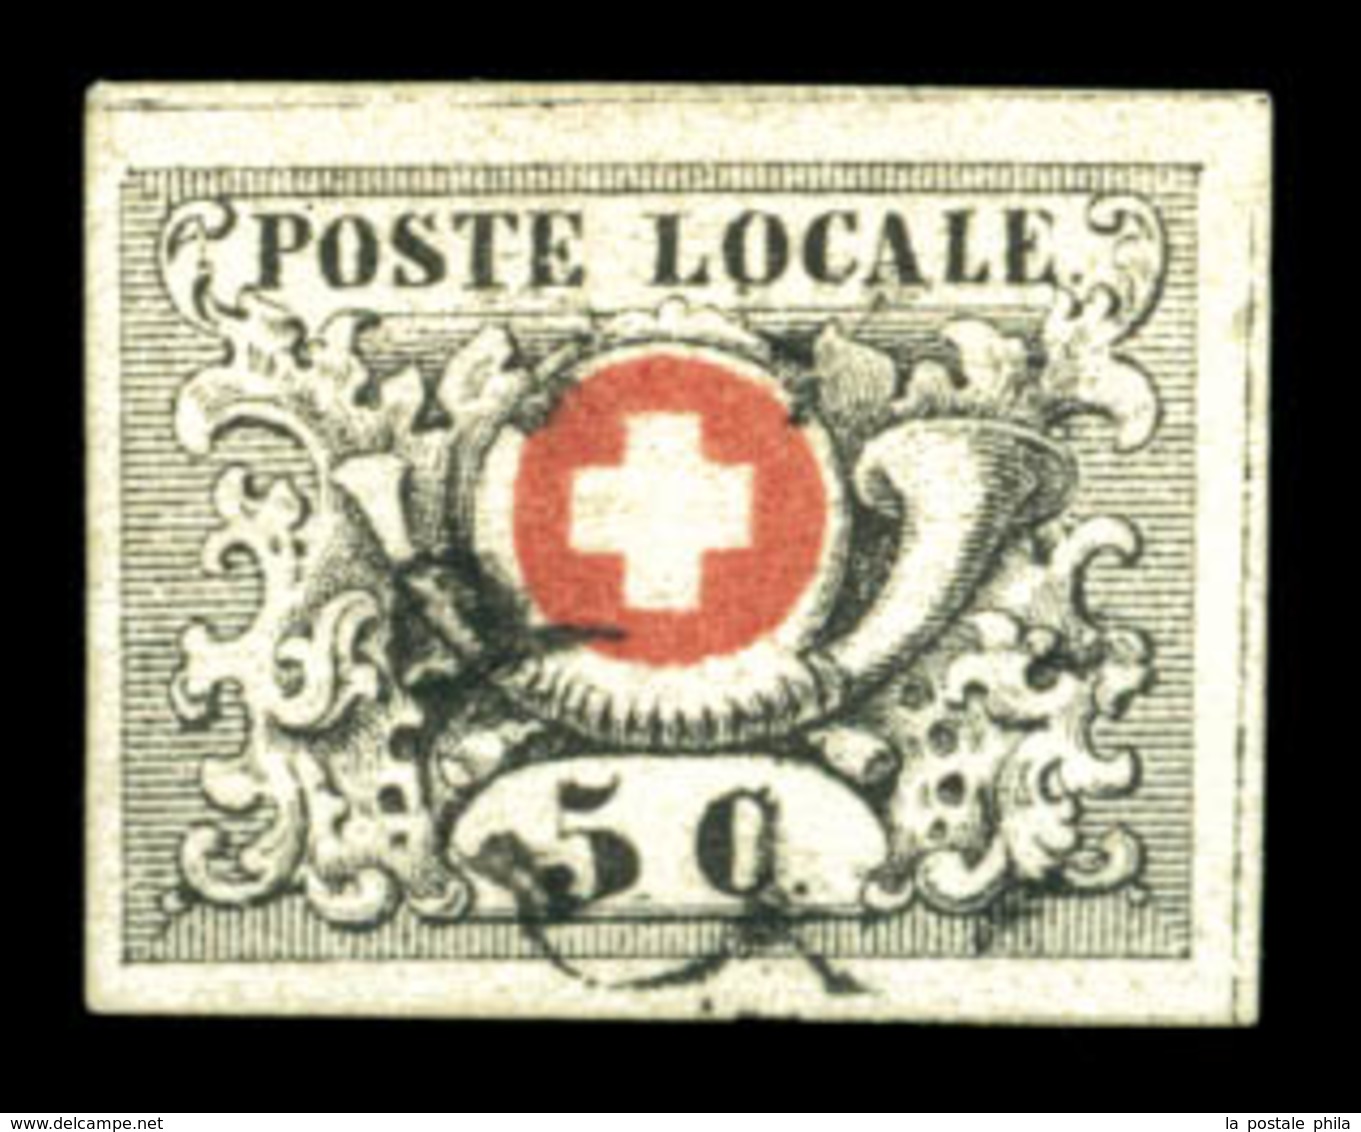 O N°6, 5c Noir Sur Rouge, VAUD. SUPERBE. R. (certificat)  Qualité: O  Cote: 1800 Euros - 1843-1852 Federal & Cantonal Stamps